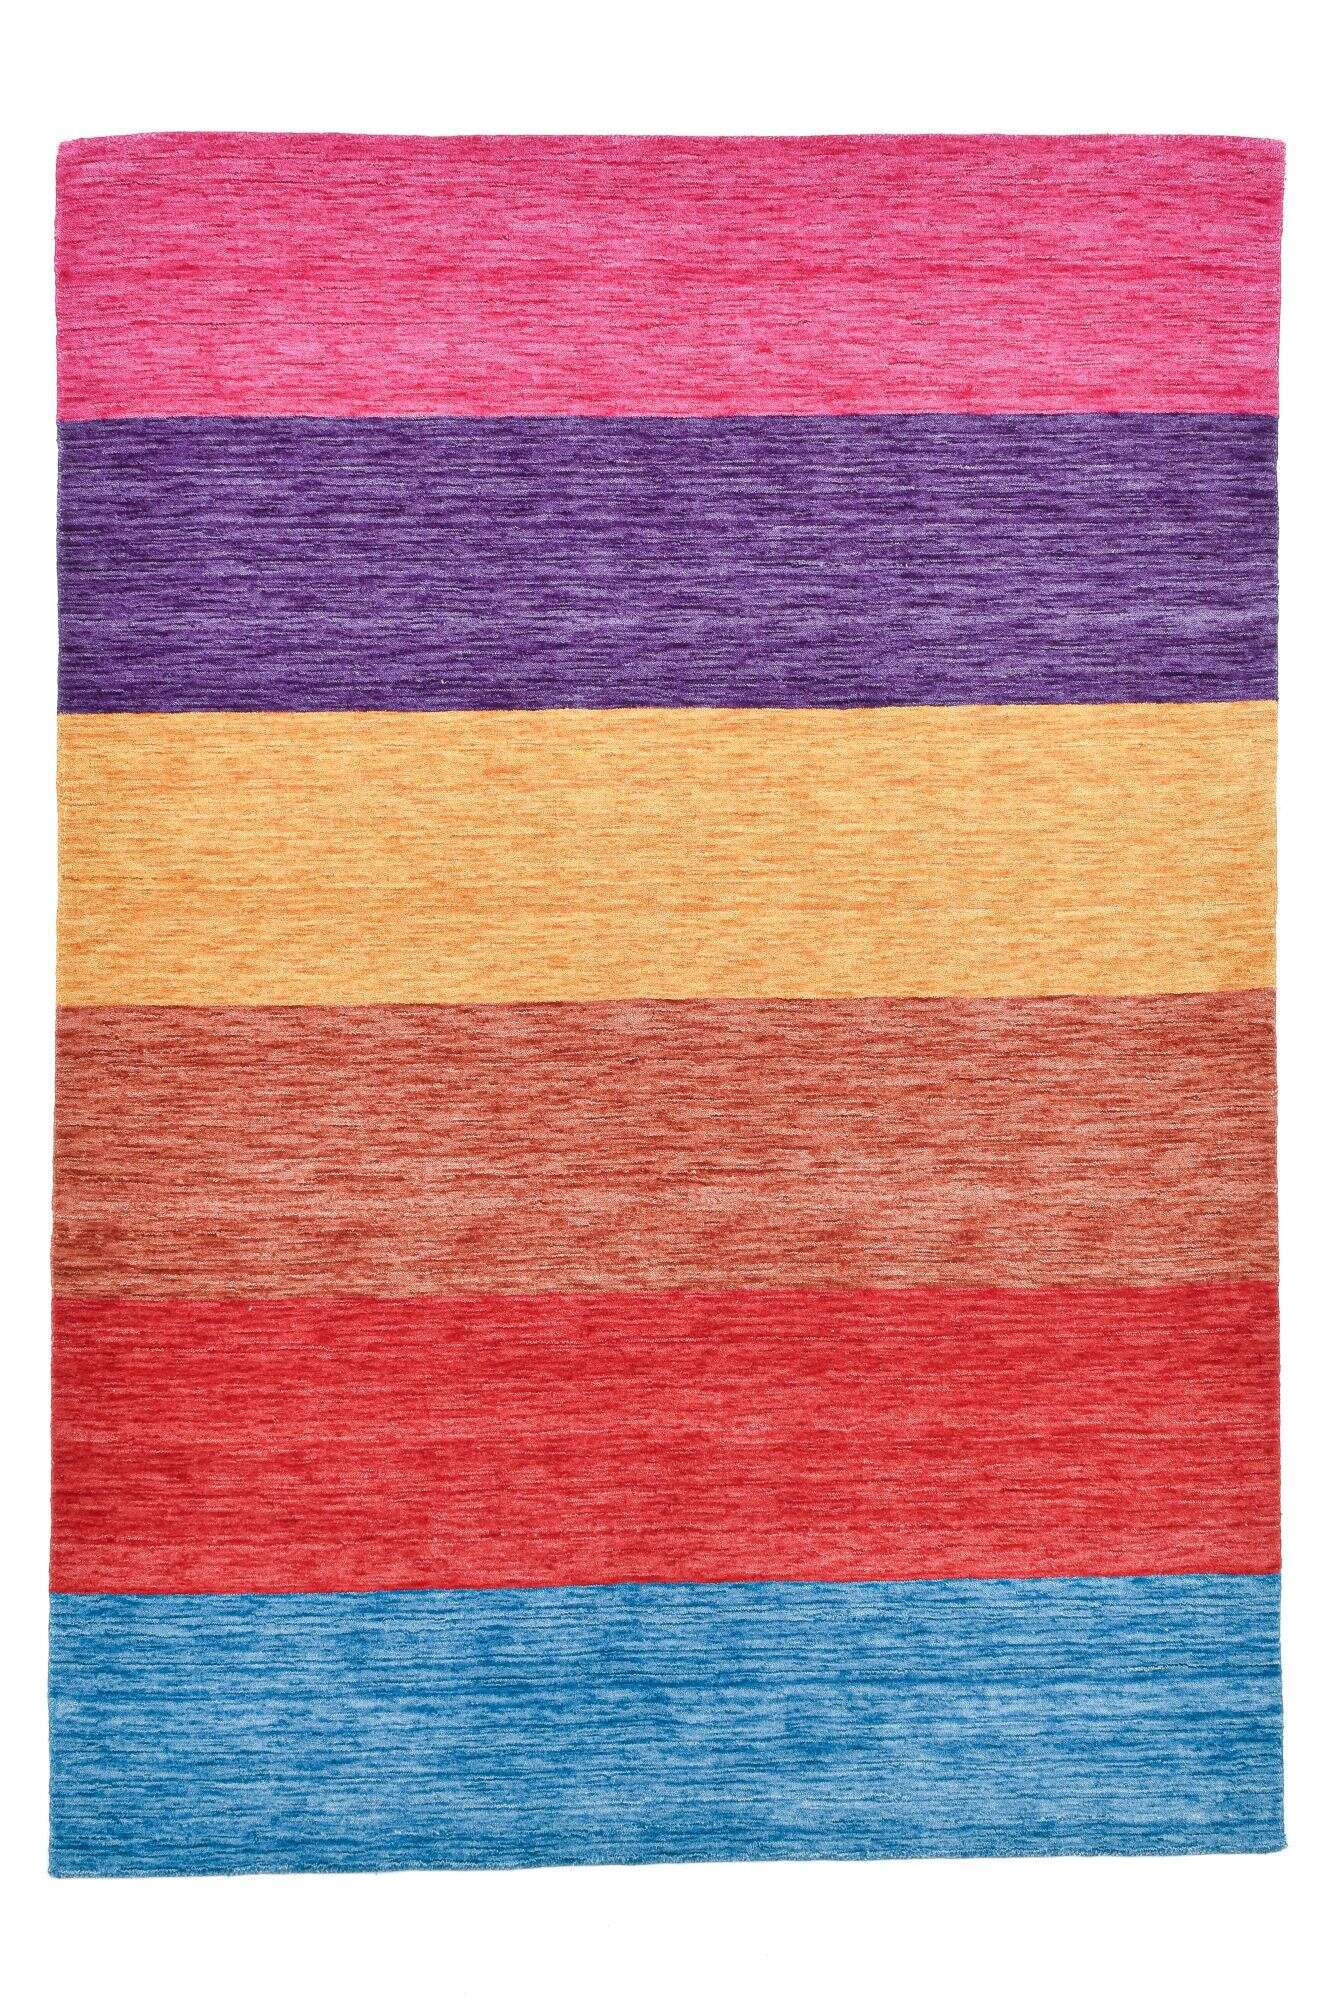 Handwebteppich Holi Schurwolle Naturteppich Bunt Multicolor